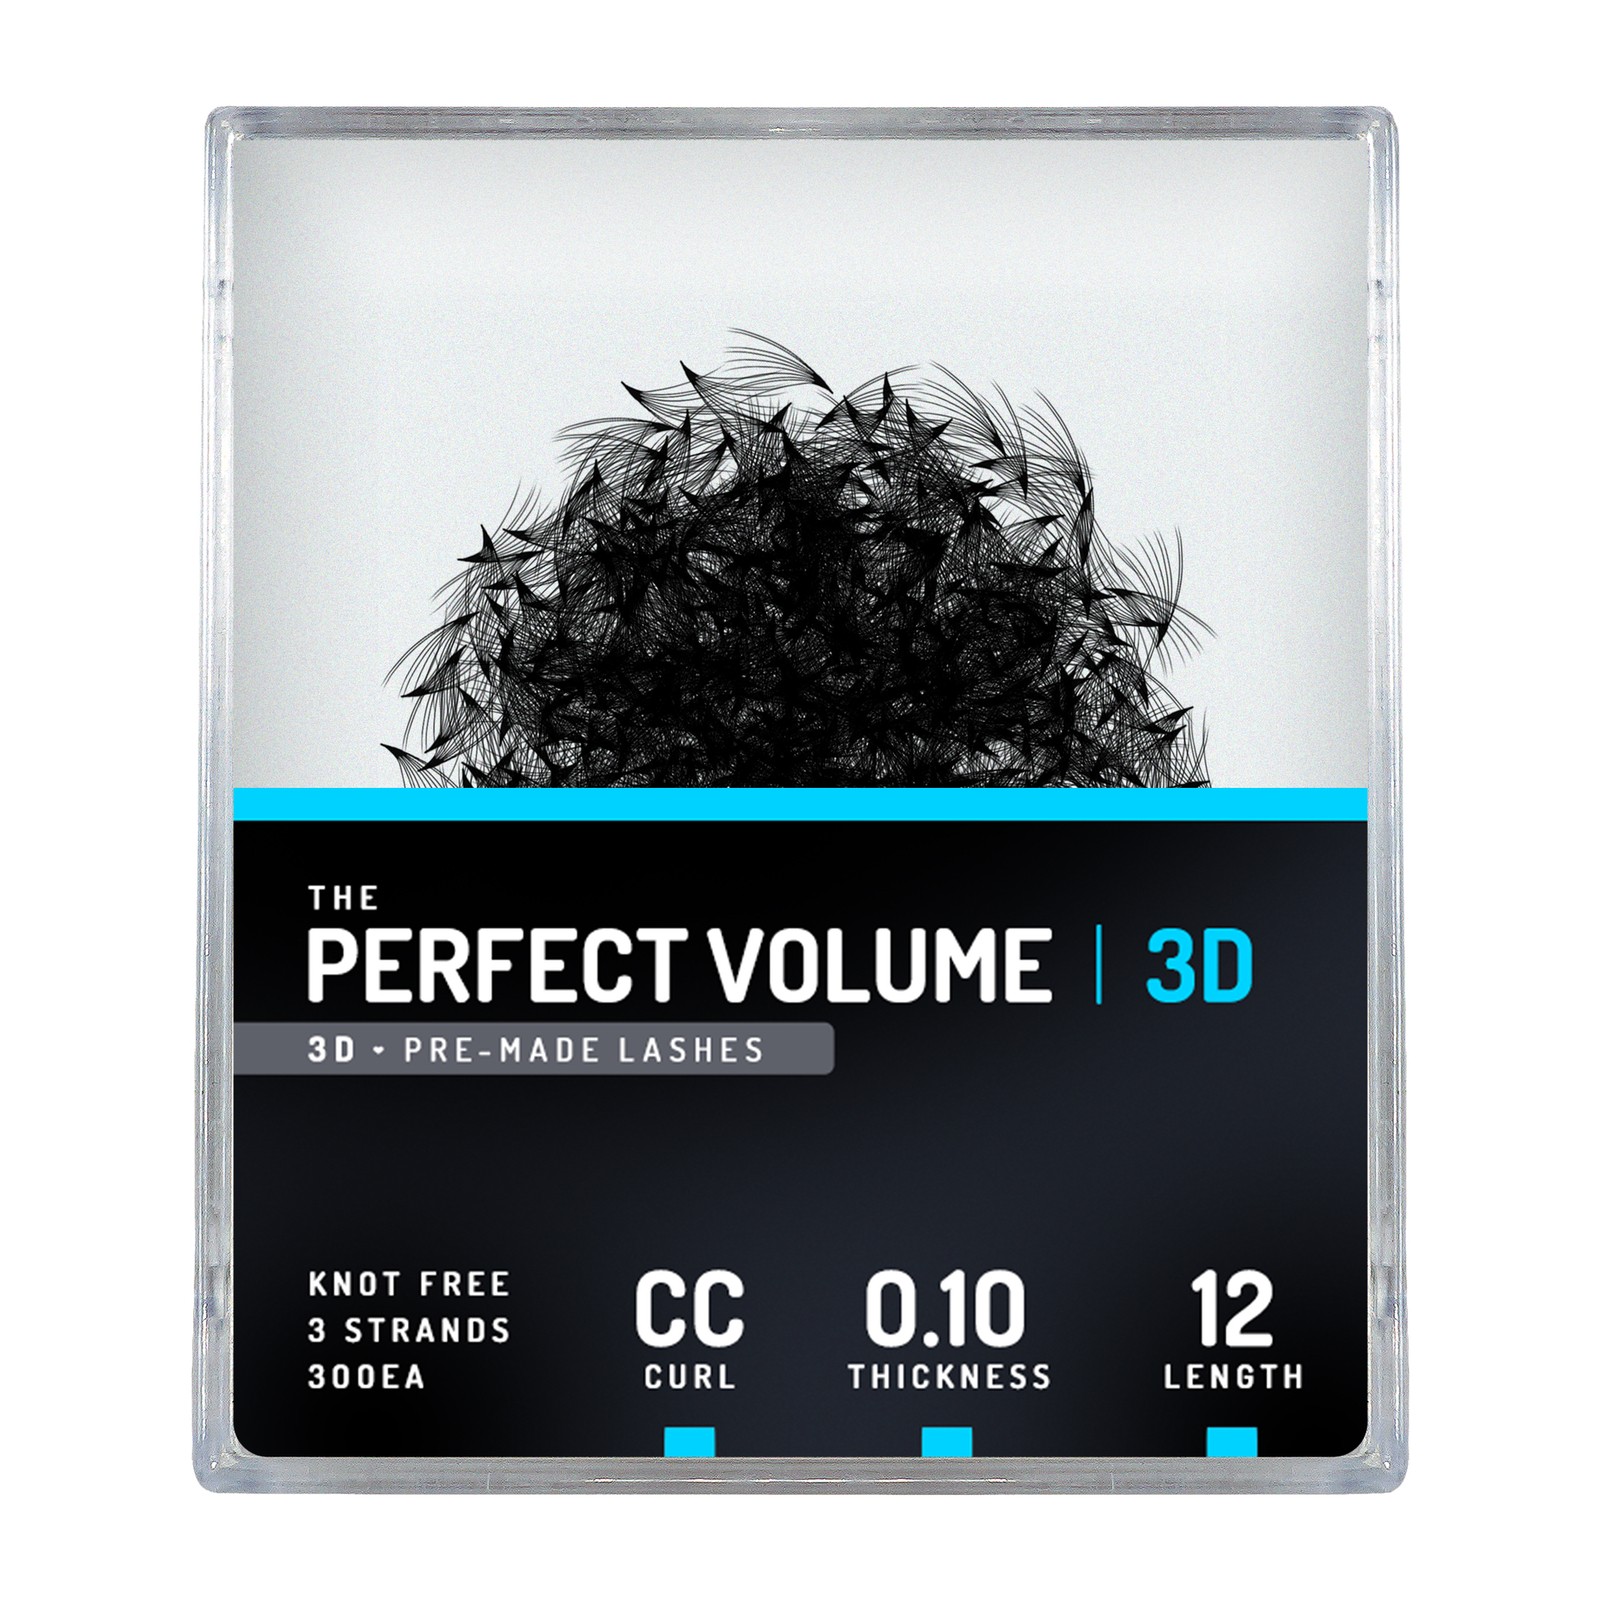 Volume parfait -  300 buchesele premade 3D -  12mm, CC, 0.10mm